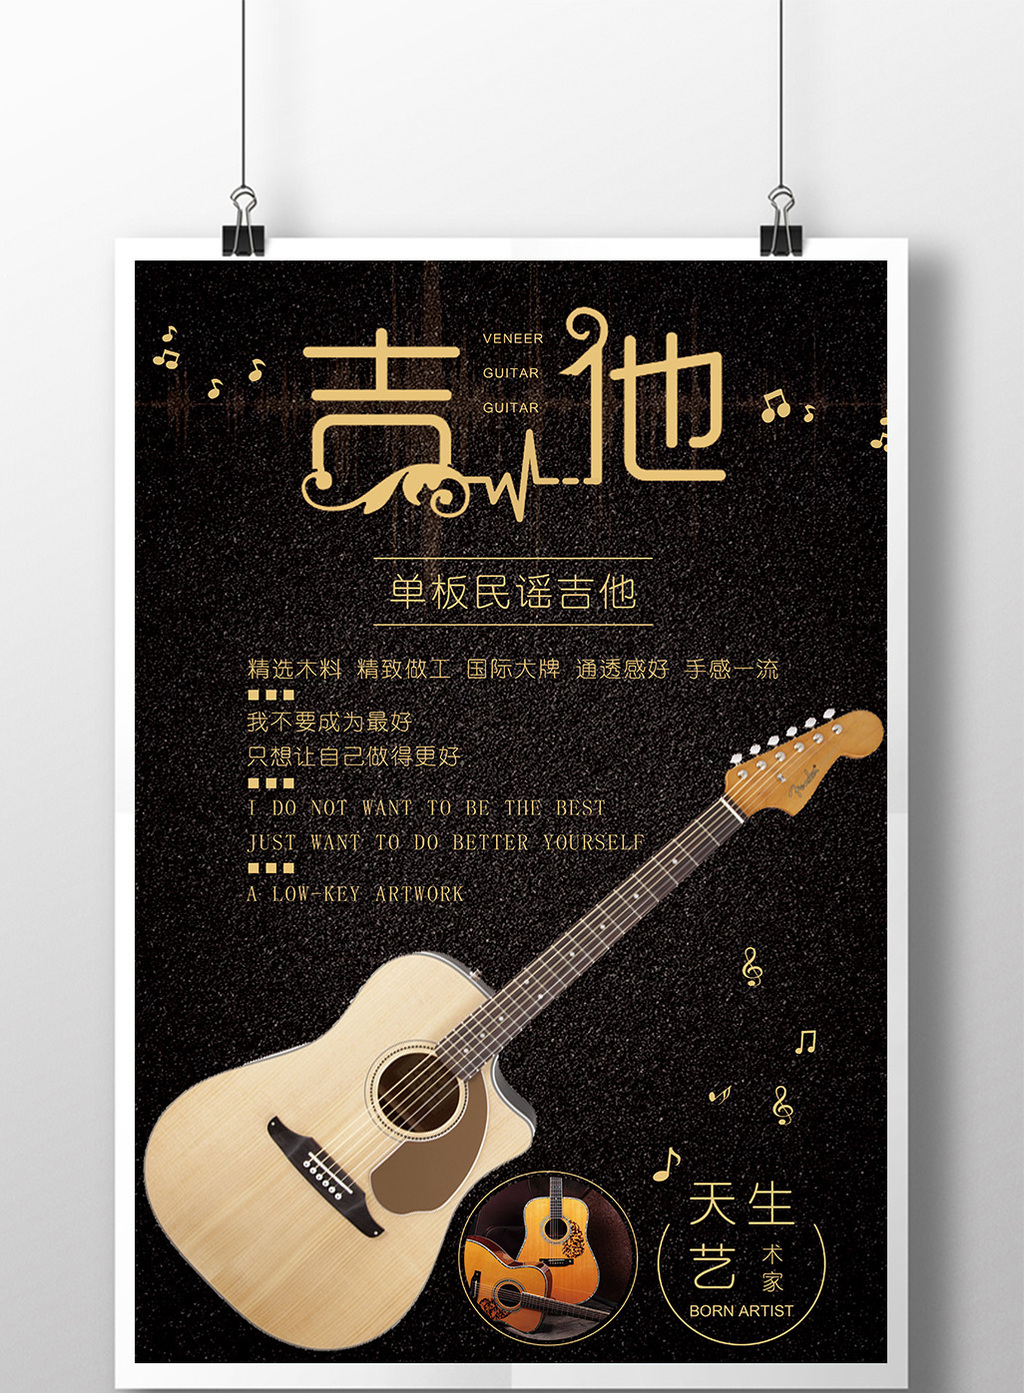 吉他培训创意海报模板免费下载_3543像素psd图片设计